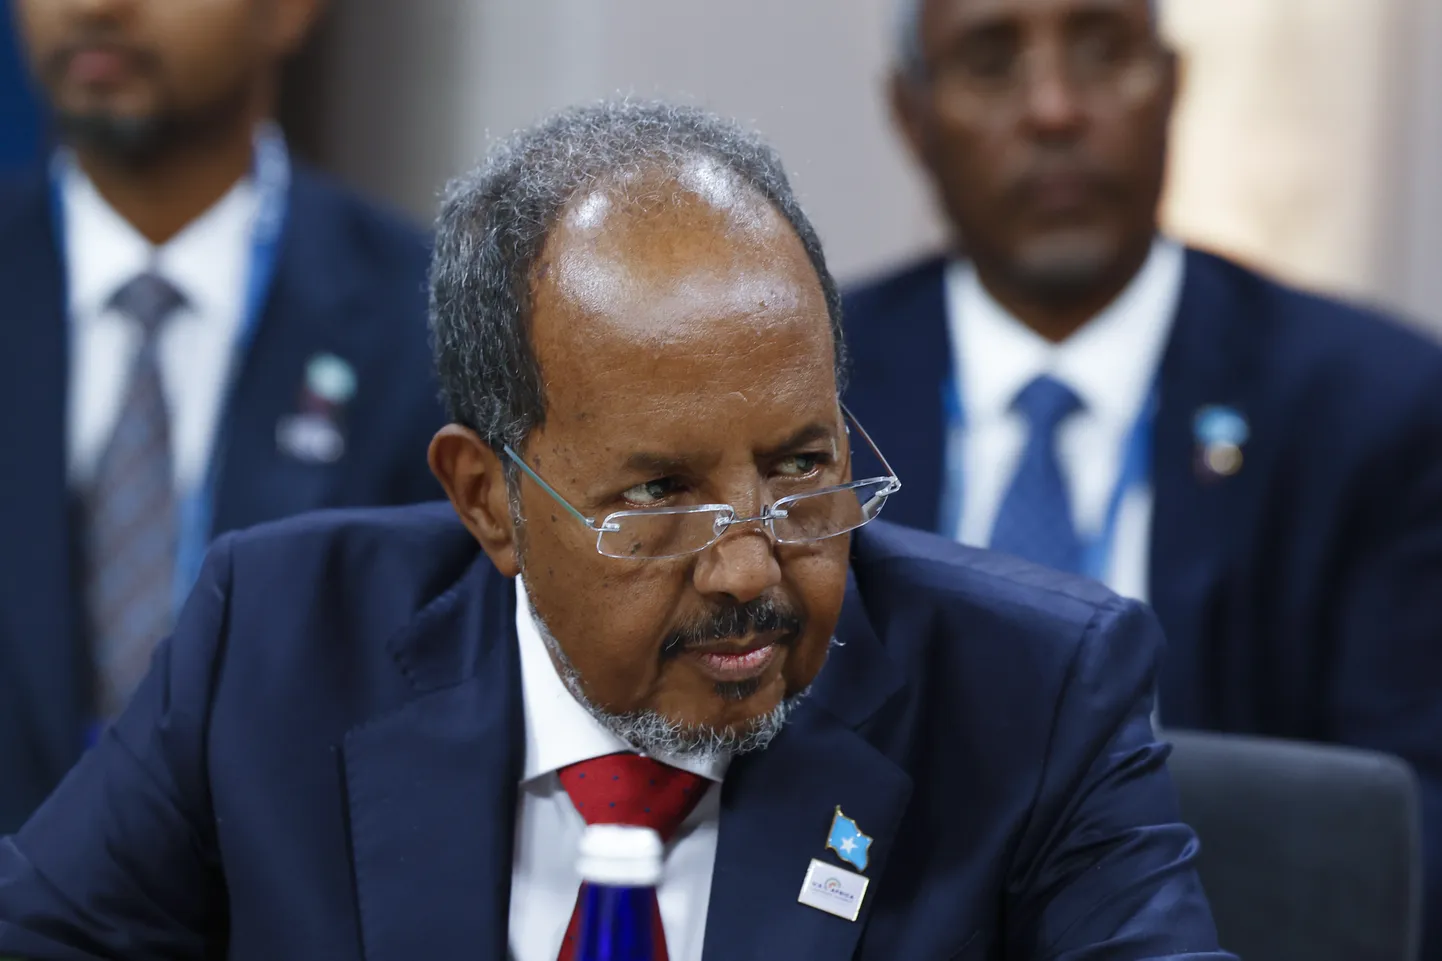 Somaalia president Mohammed Hassan Sheikh Mohamud.